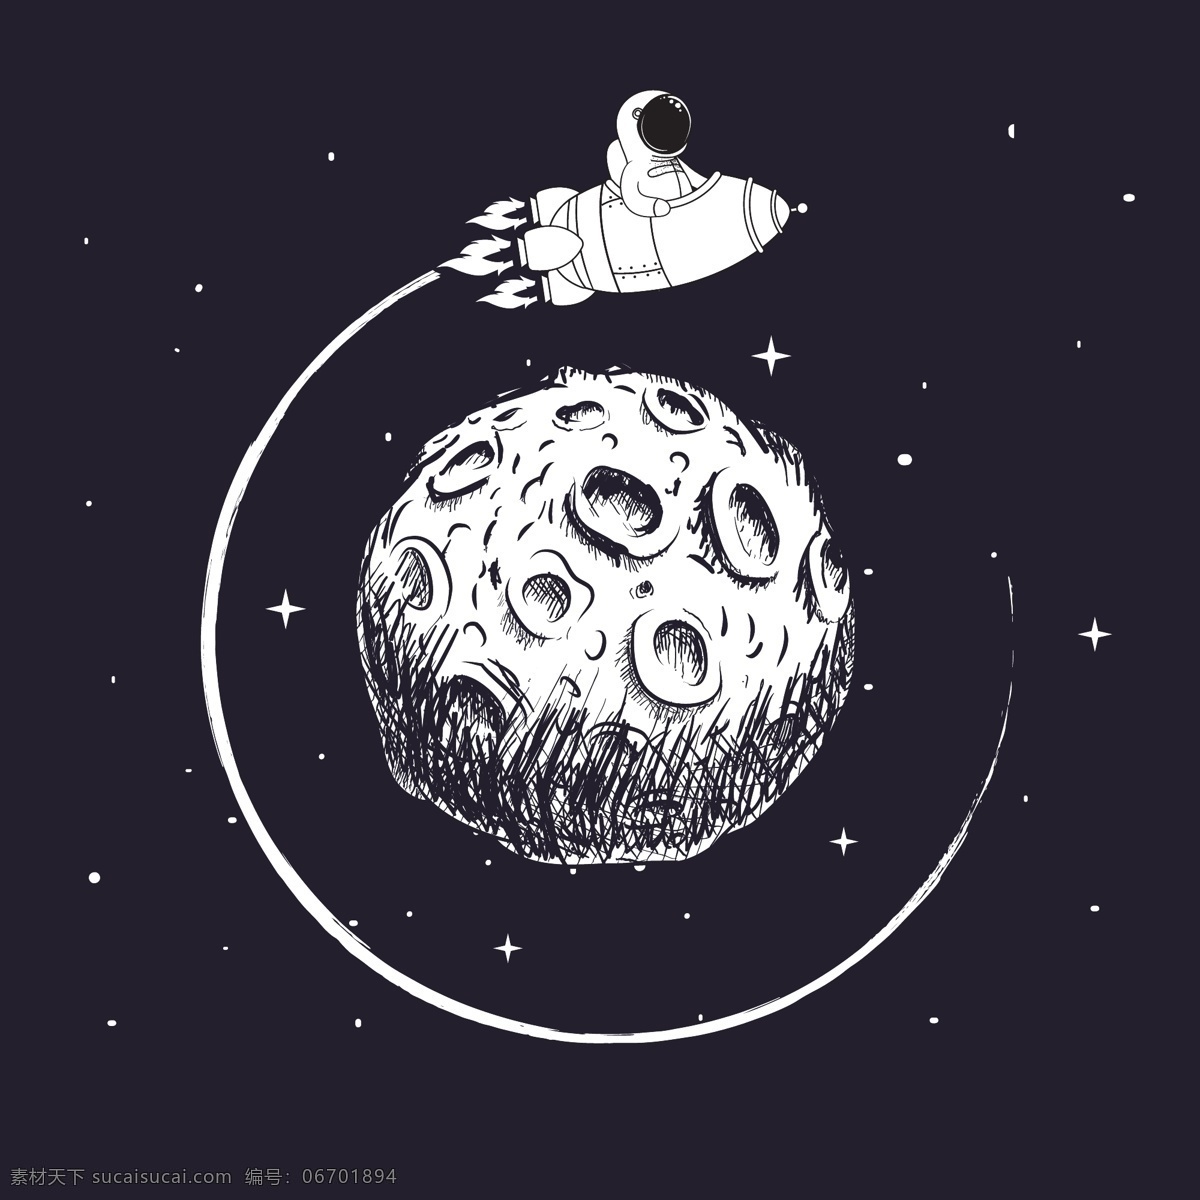 太空 宇航员 矢量 黑白插画 宇宙 卡通宇航员 月球 贴纸 动漫动画 动漫人物 大气外太空 星球 插画 插图 风景漫画